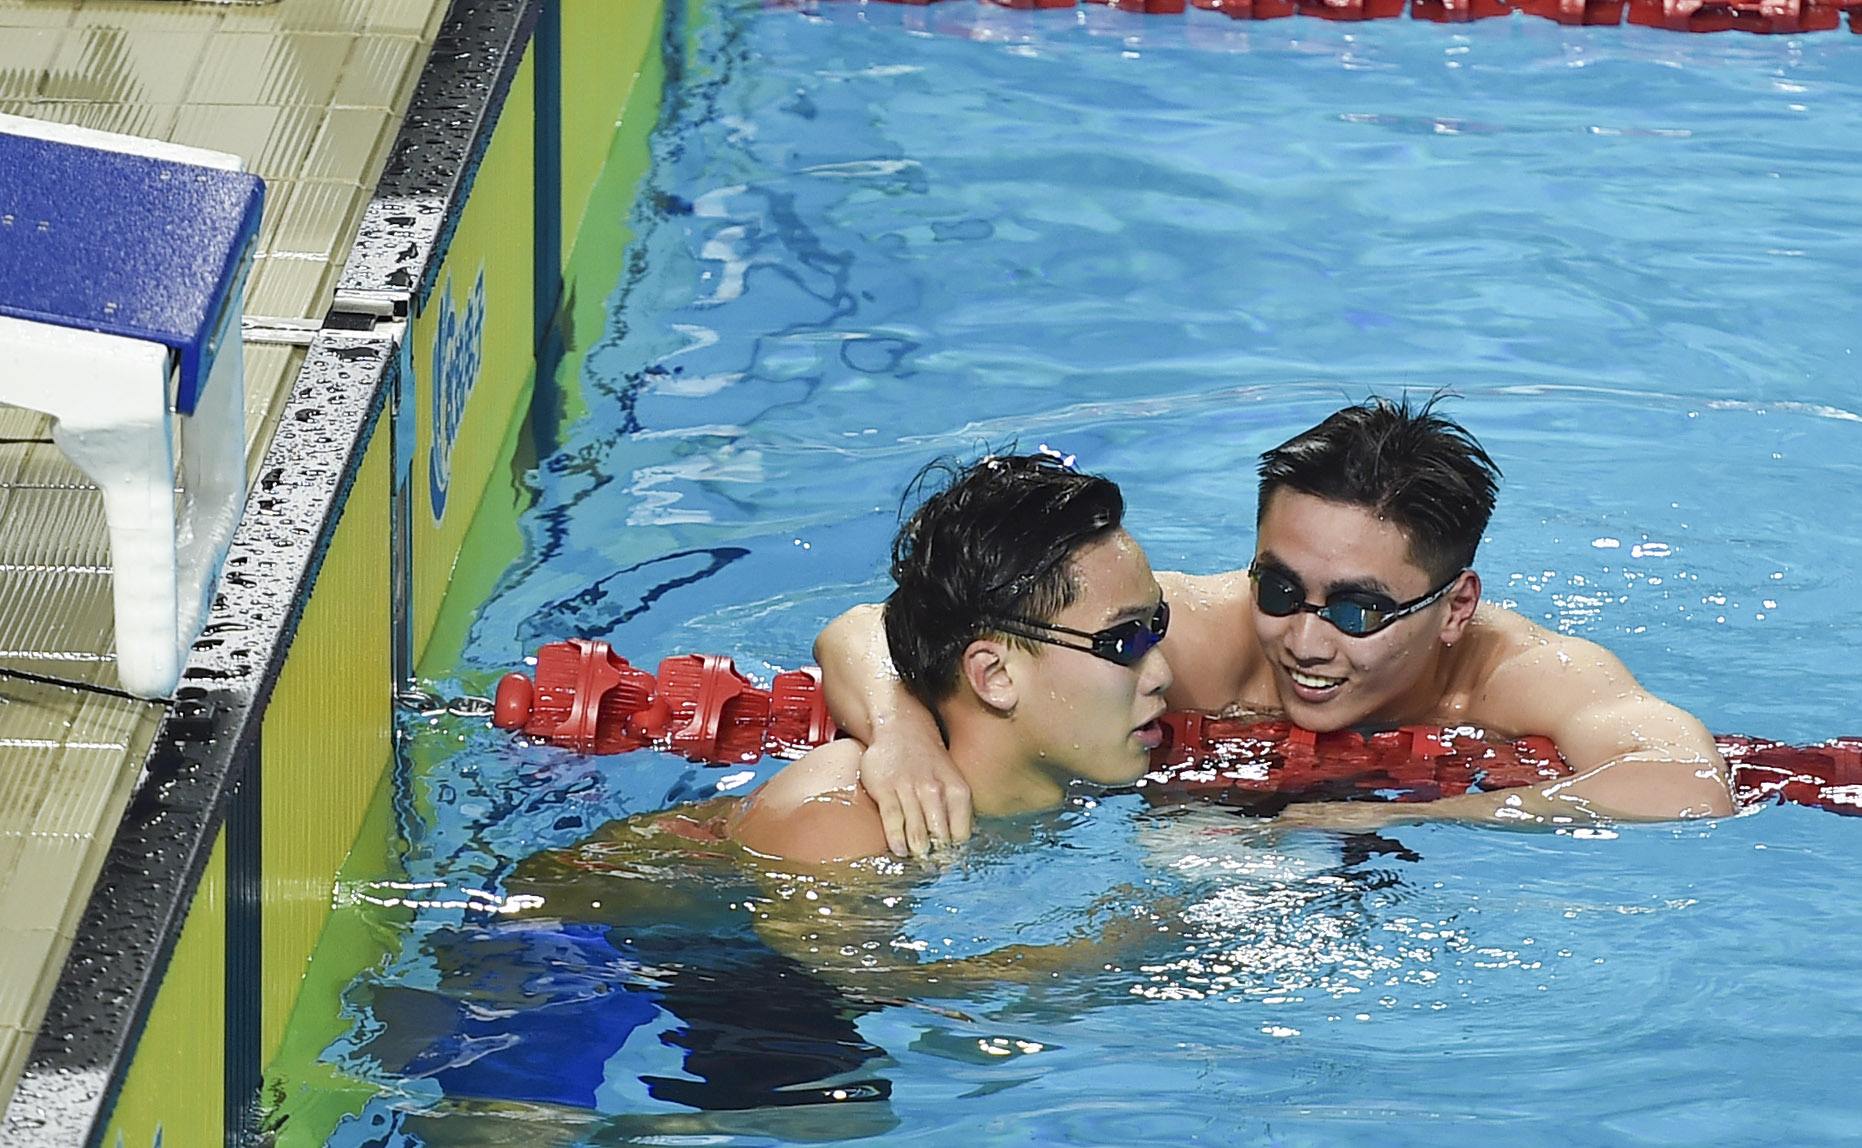 男子200米蝶泳，男子200米蝶泳世界纪录吗